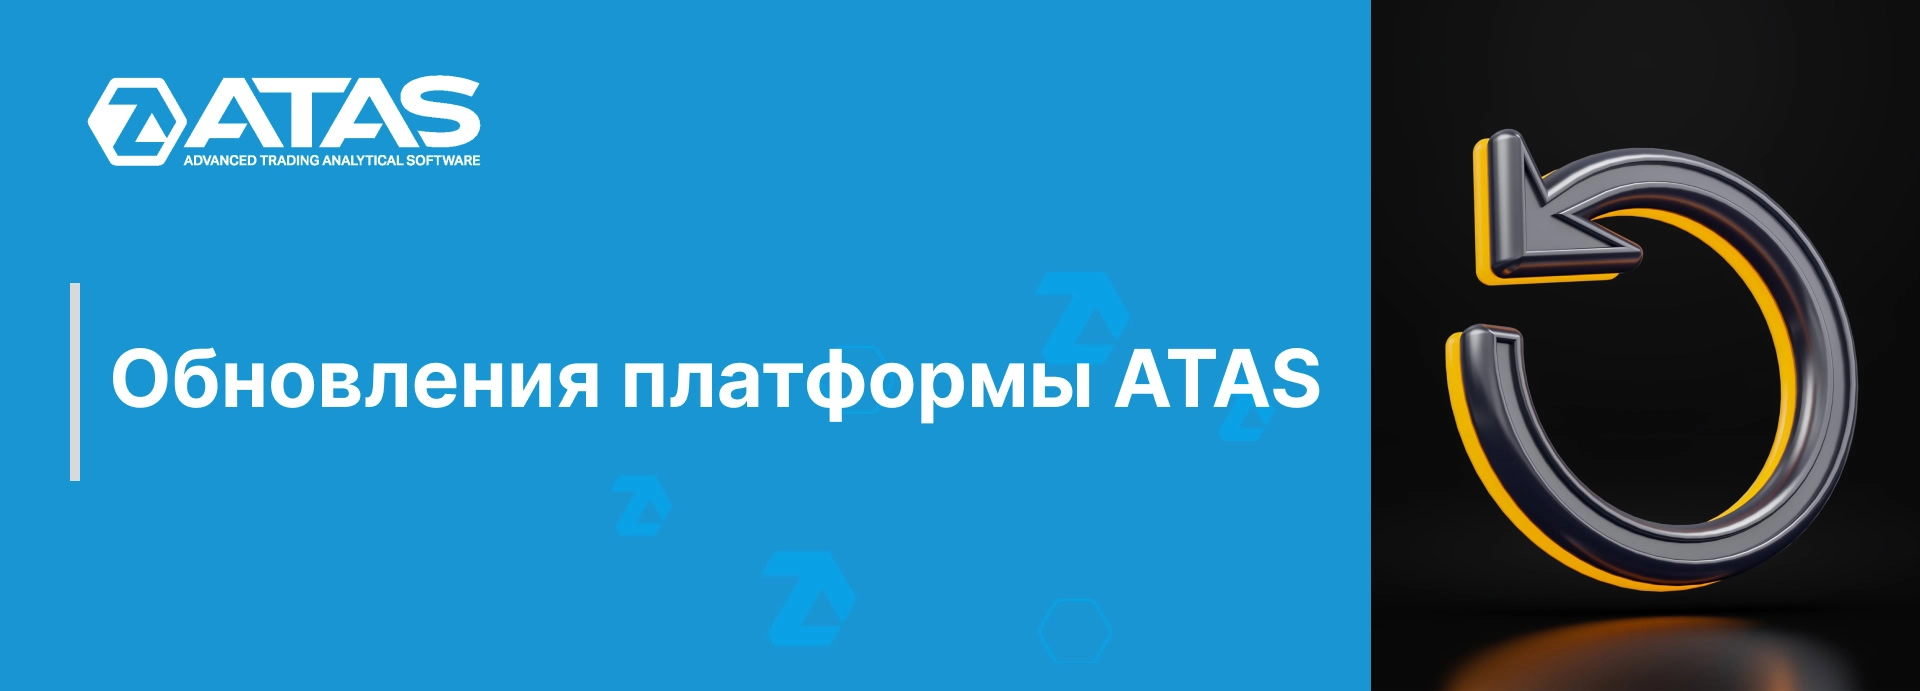 Обновления платформы ATAS